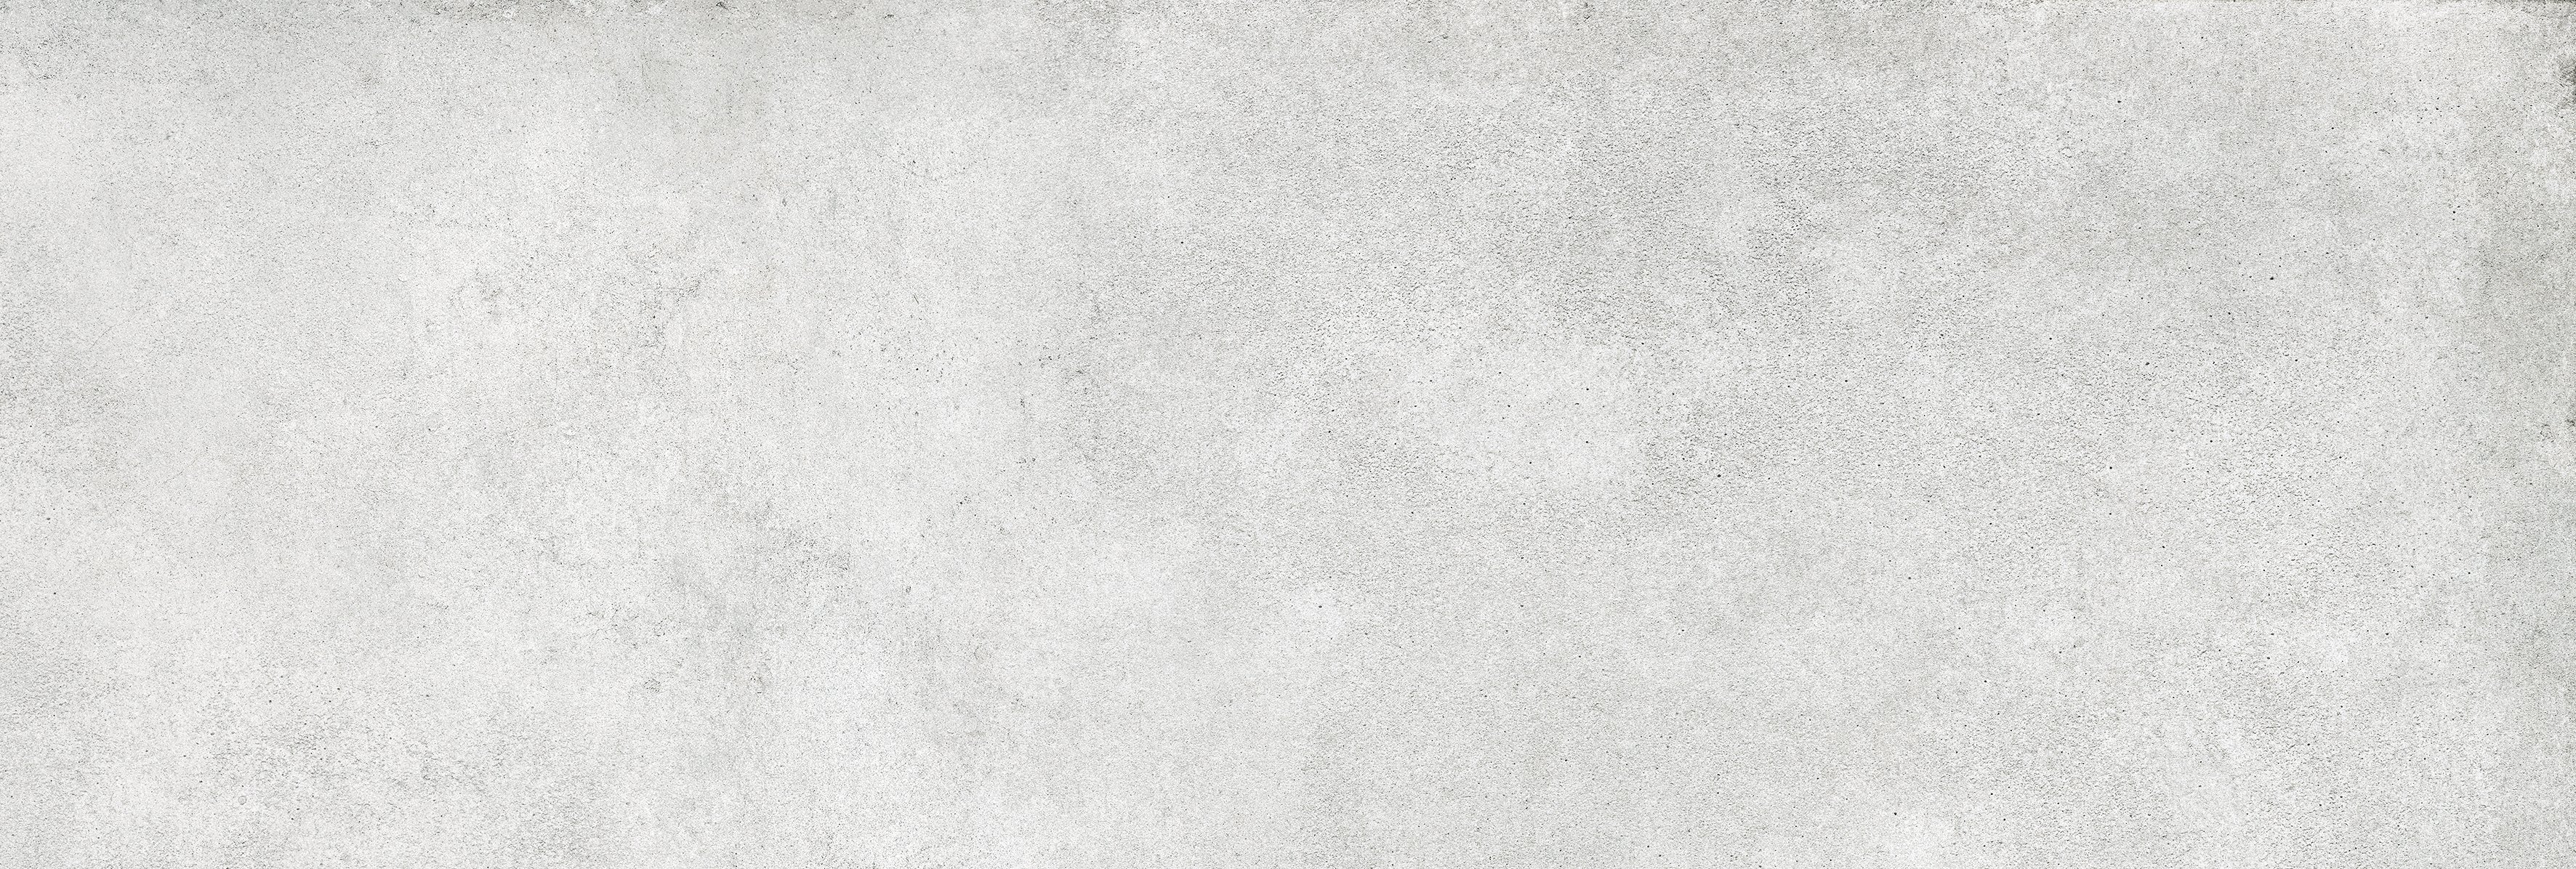 Locarno grey - obkládačka rektifikovaná 25x75 šedá 154263